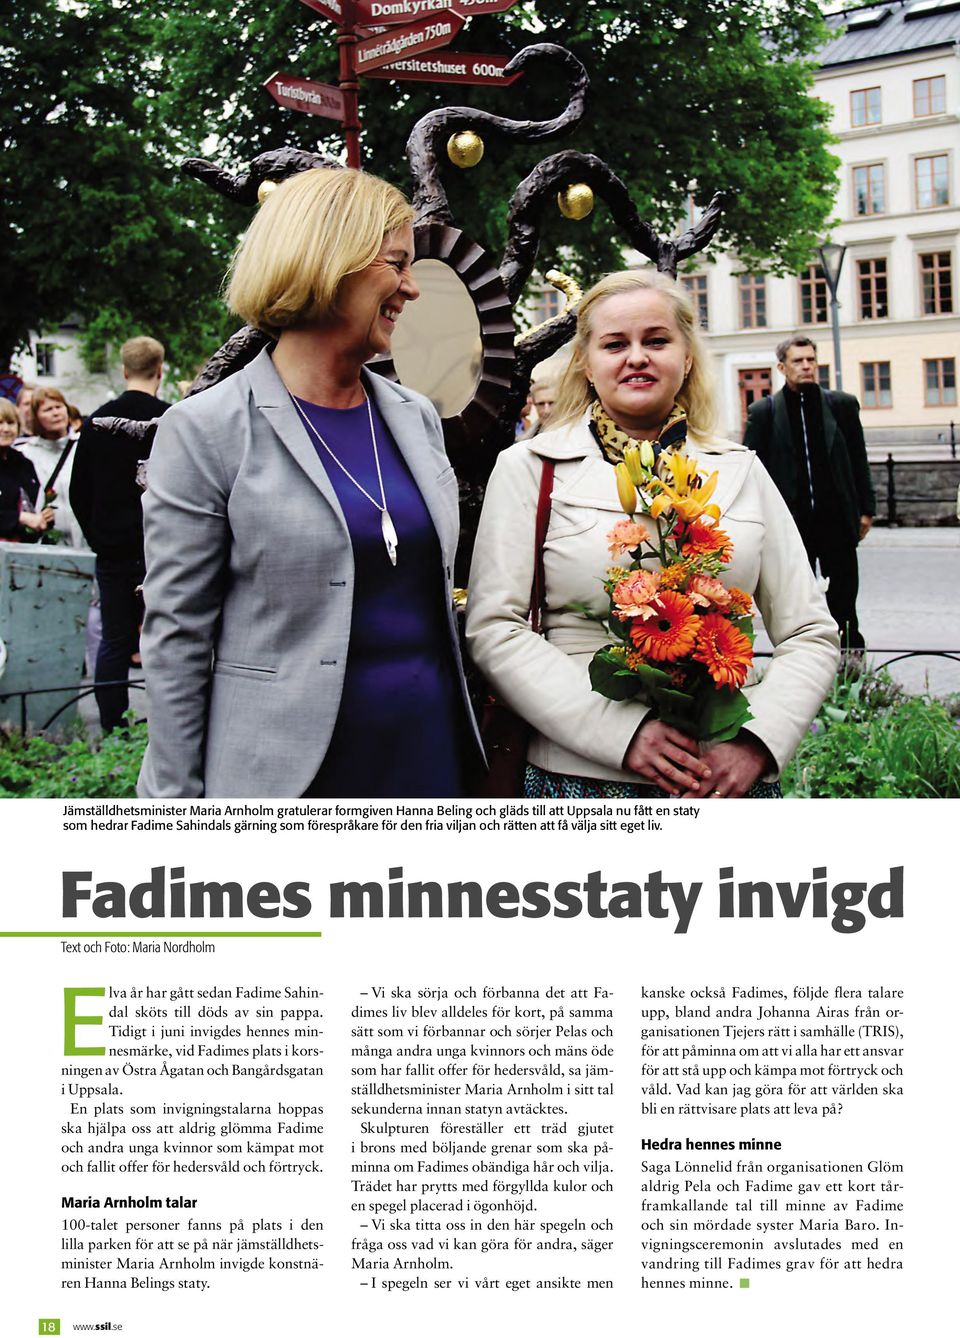 Tidigt i juni invigdes hennes minnesmärke, vid Fadimes plats i korsningen av Östra Ågatan och Bangårdsgatan i Uppsala.